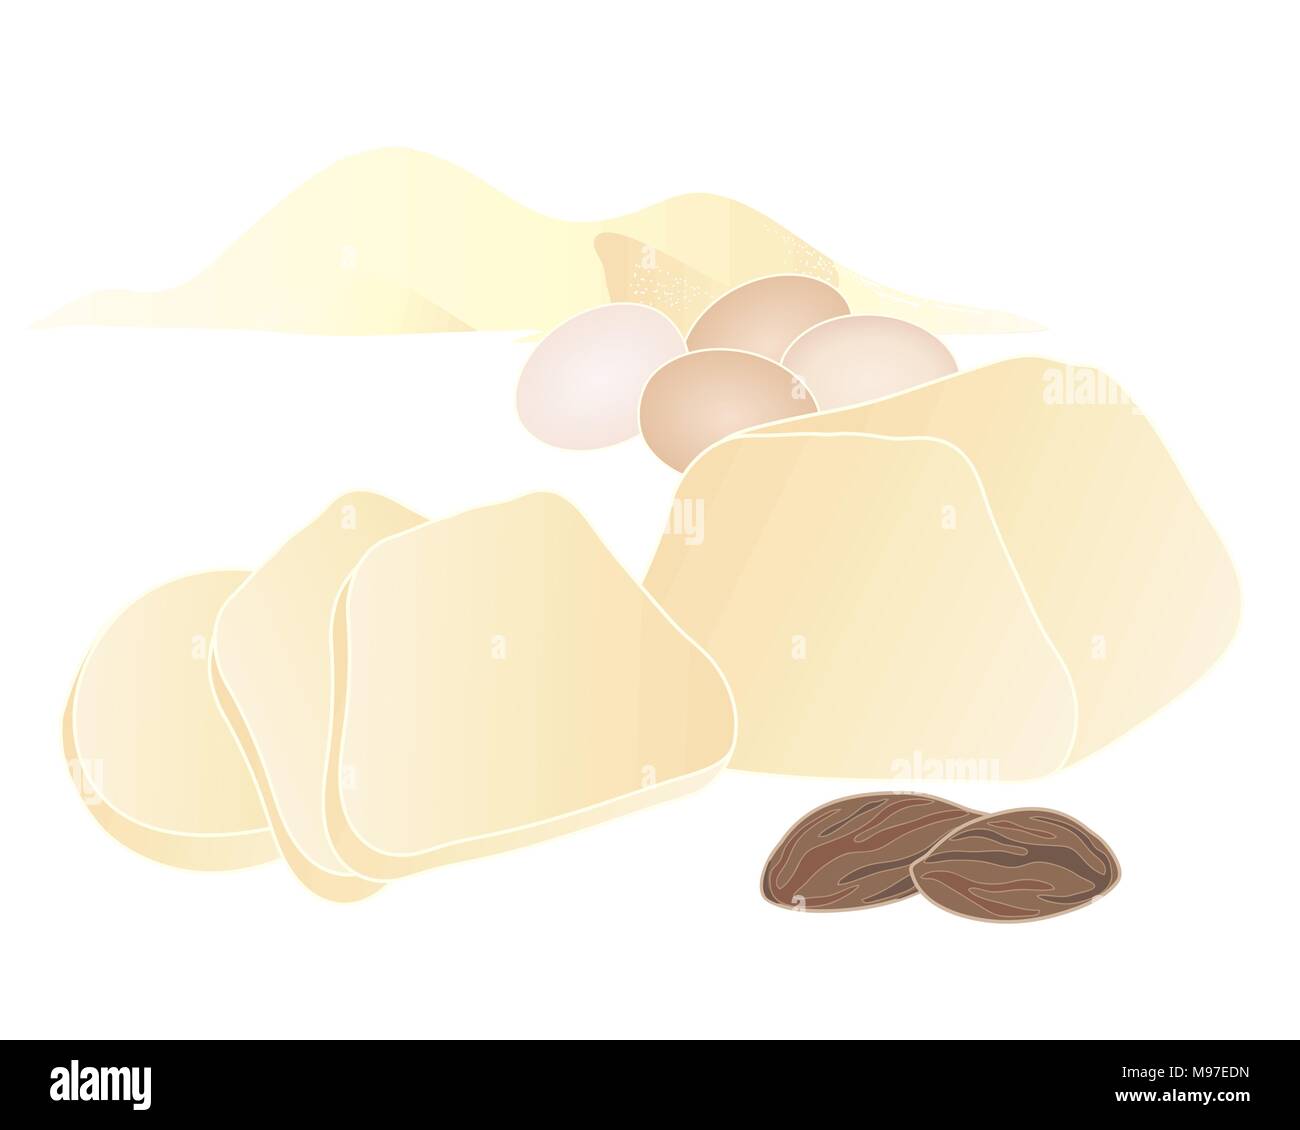 Ein Vektor Abbildung im EPS 10-Format von einem Stück Marzipan mit Scheiben Mandeln Eier und Zucker Stapel auf weißem Hintergrund Stock Vektor